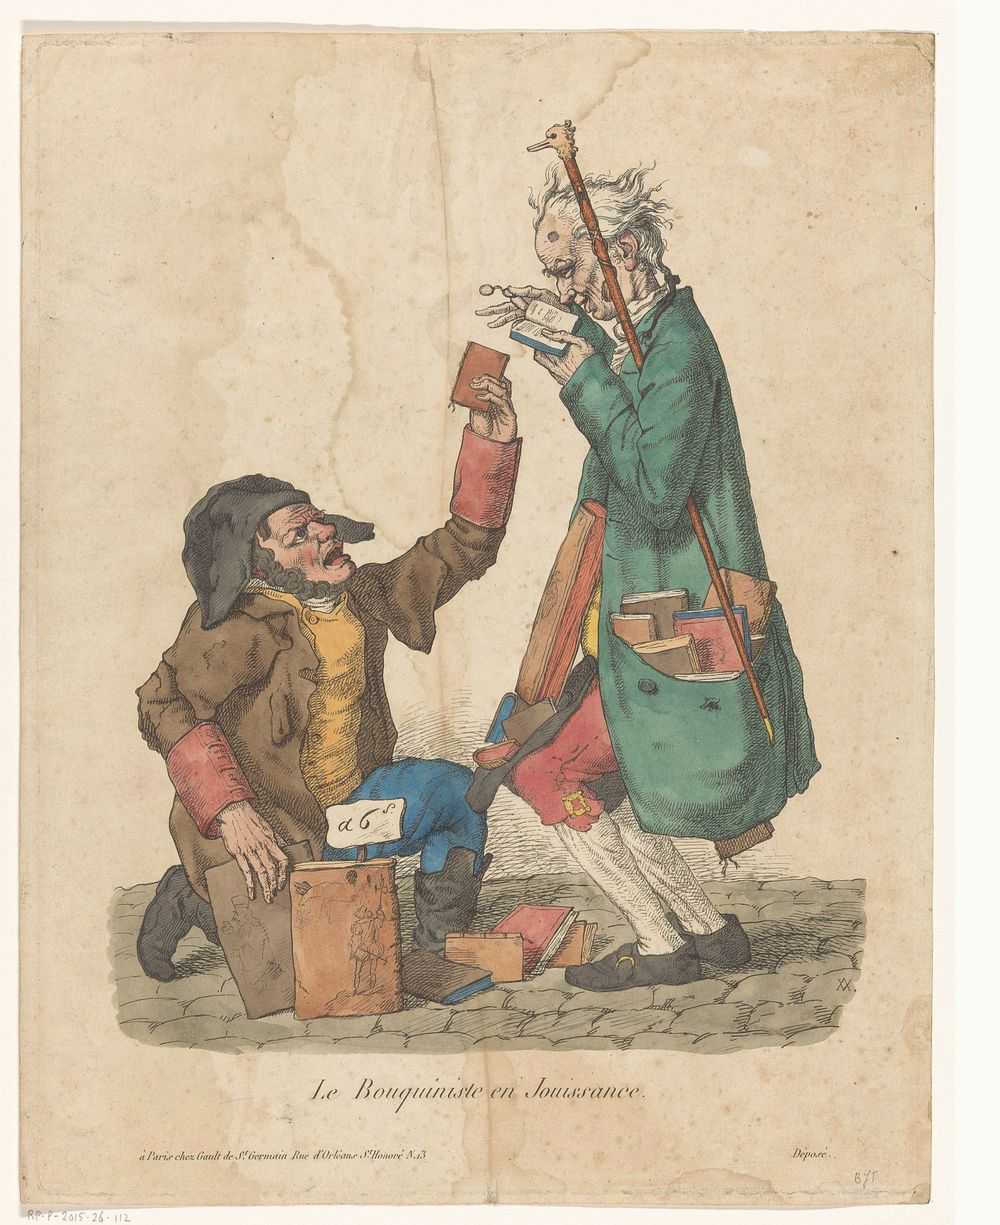 Boekverkoper met een klant op straat (1817) by Adrien Victor Auger and Pierre Marie Gault de Saint Germain